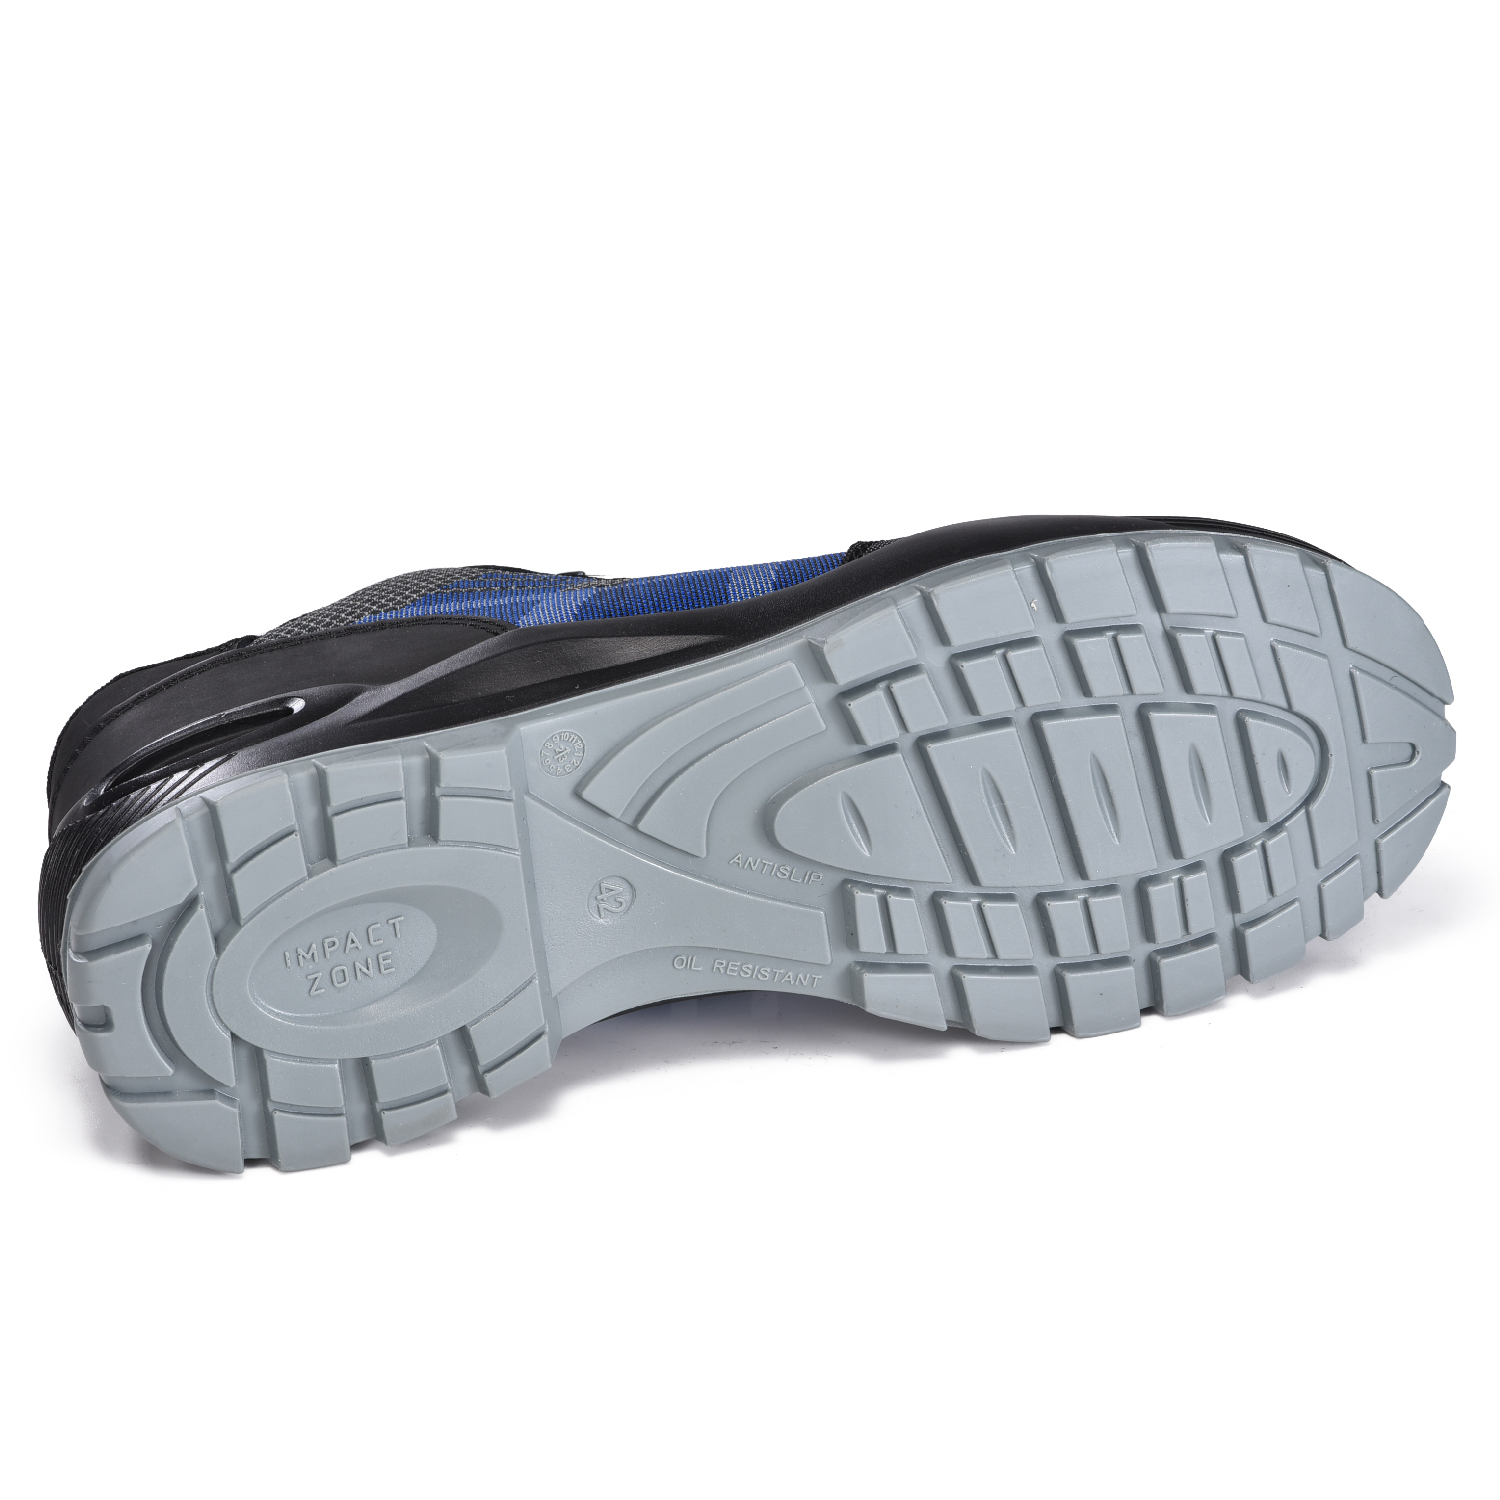 Zapatos de Seguridad con Hebilla Giratoria para Hombre con Auto Lace Fitgo System L-7533